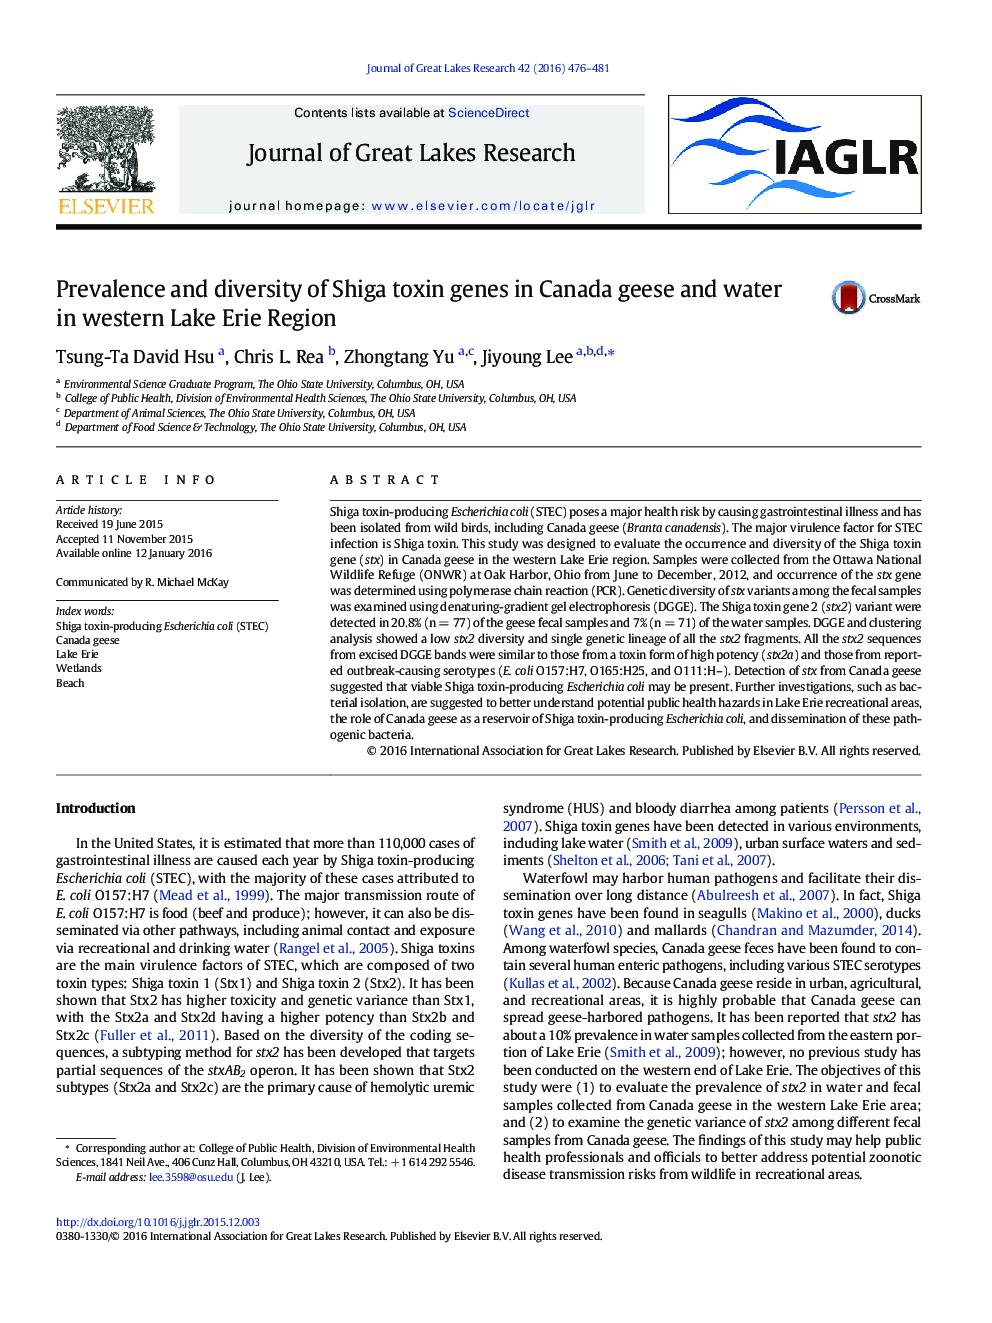 شیوع و تنوع ژنهای توکسین شیگا در غازها و آبهای کانادا در منطقه غربی لیبی اری 